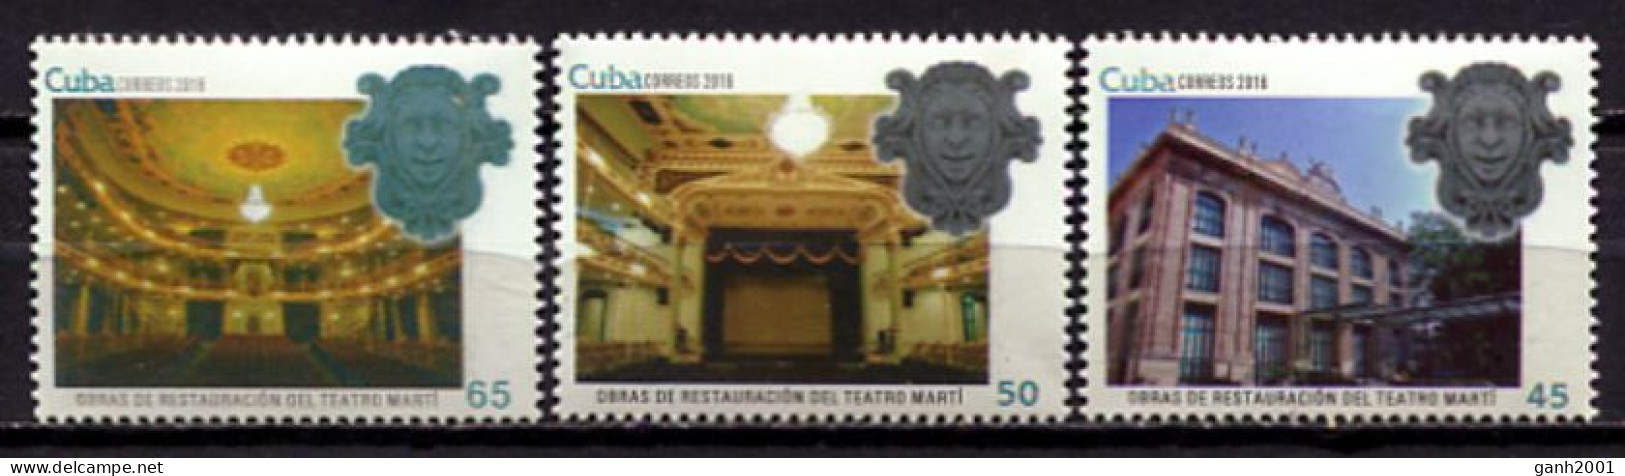 Cuba 2016 / Theatre Jose Marti MNH Teatro Theater / Cu1627  5-20 - Theater